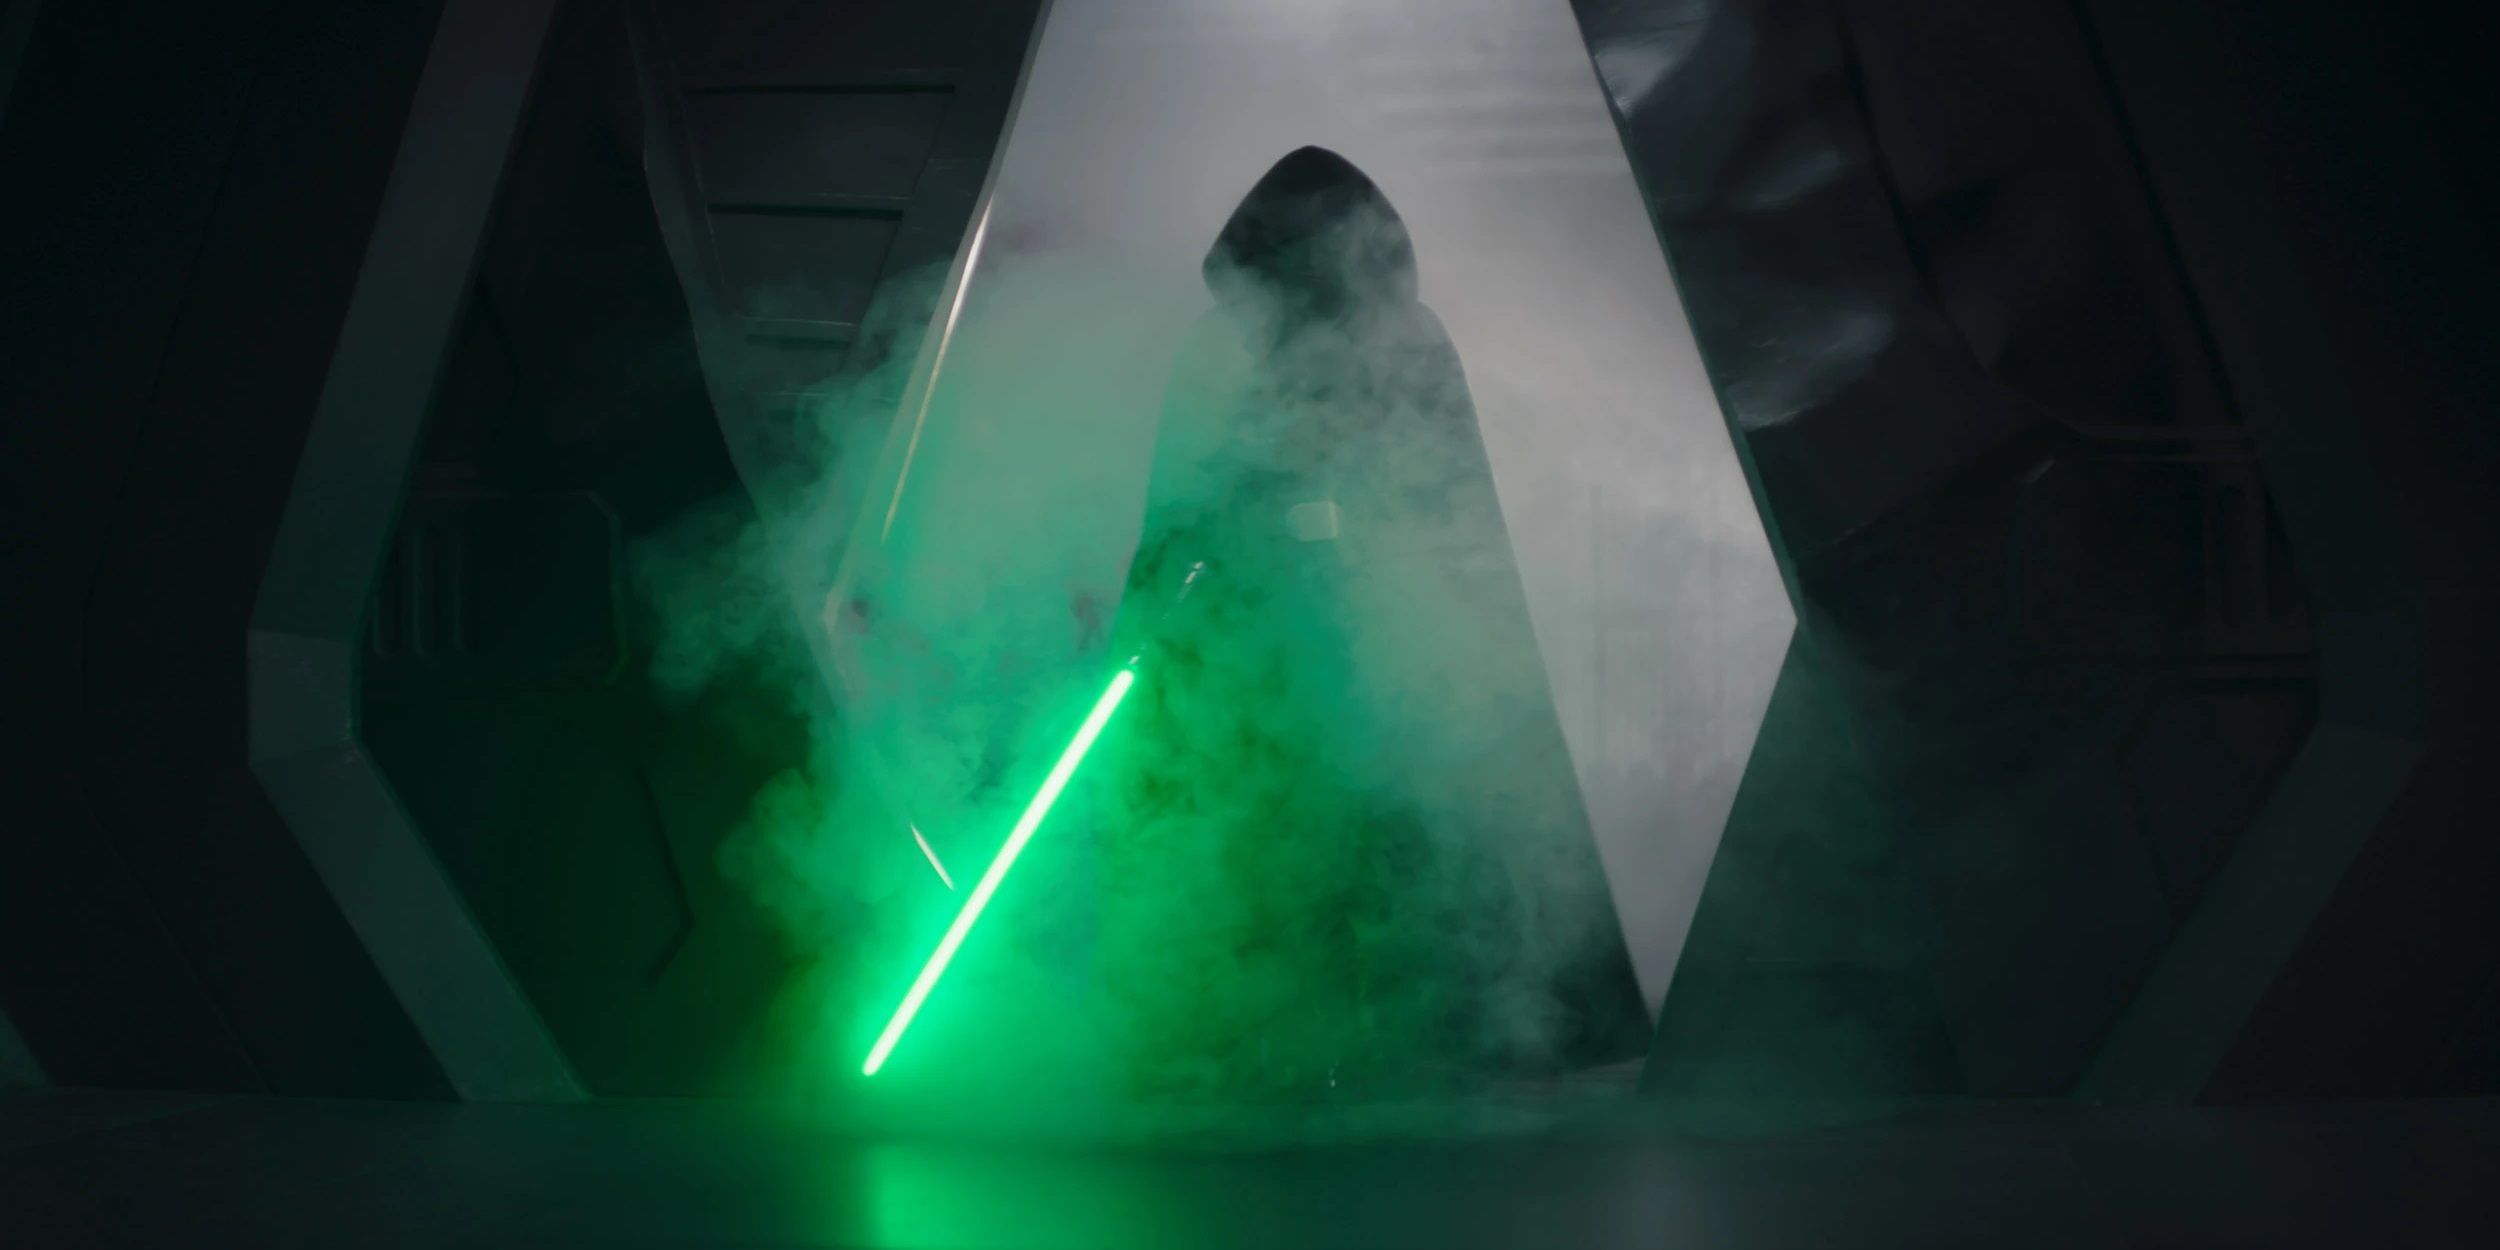 Luke Skywalker with a green lightsaber in The Mandalorian season 2 finale